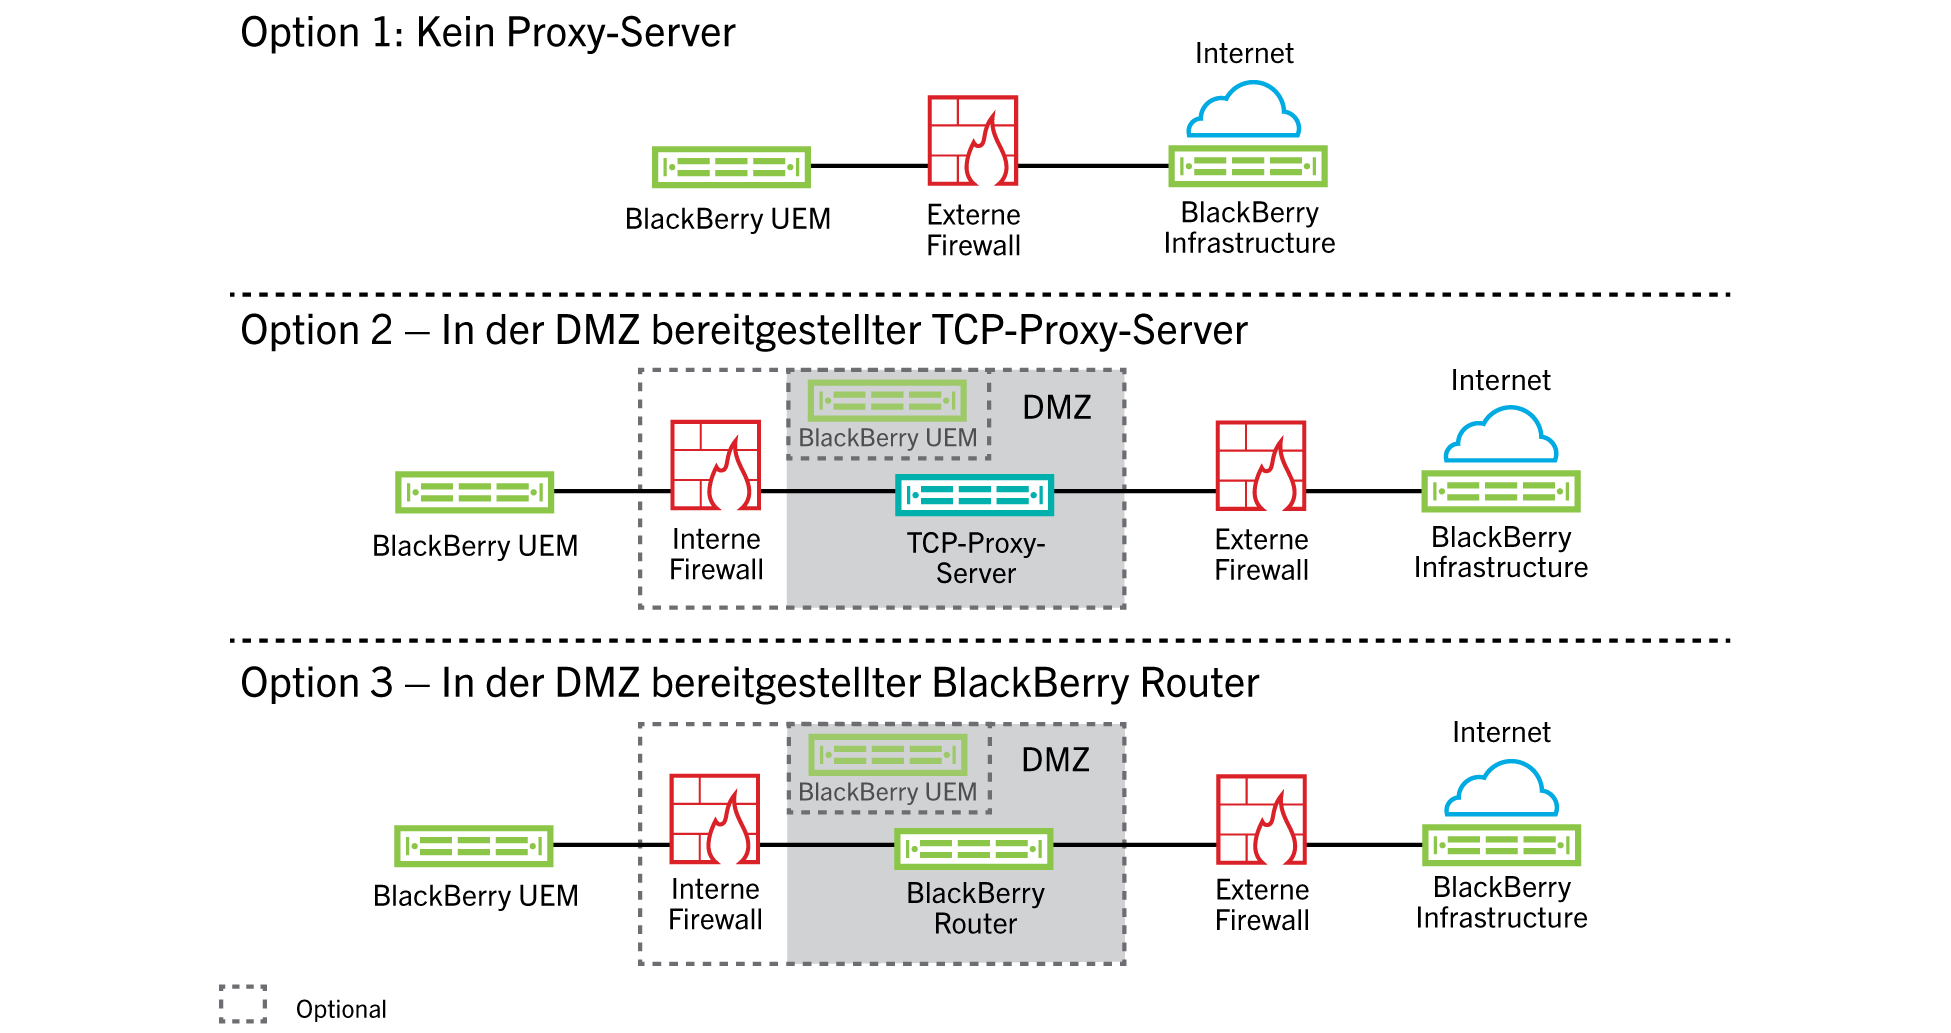 Diese Abbildung zeigt die Konfiguration von BlackBerry UEM ohne Verwendung eines Proxyservers, einen TCP-Proxyserver in der DMZ und den BlackBerry Router in der DMZ.